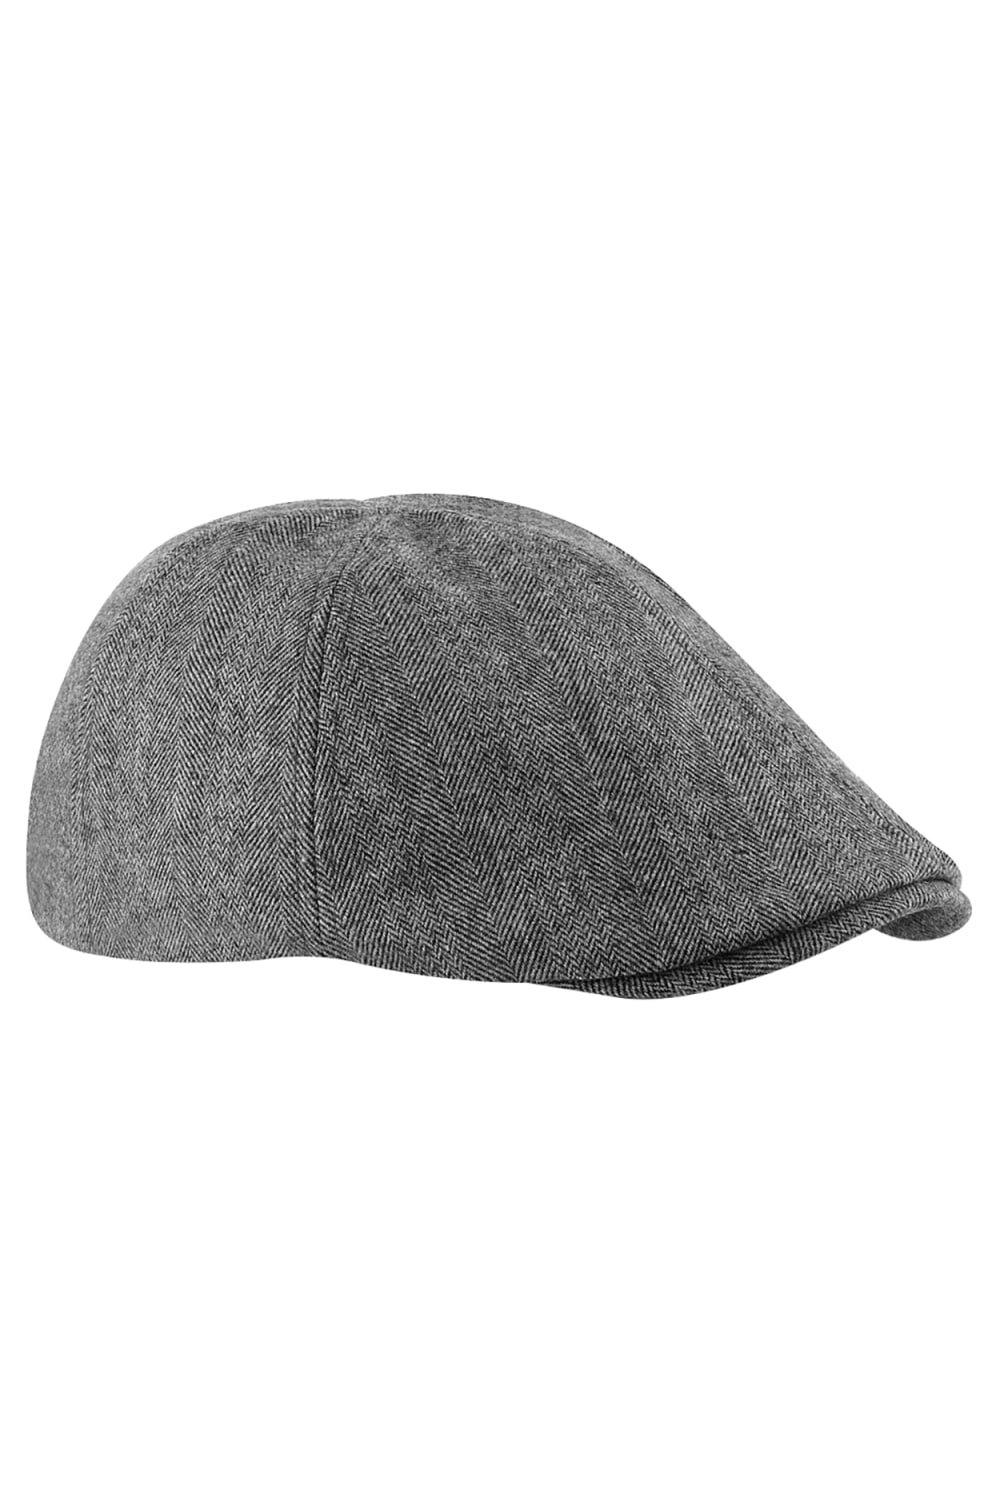 Beechfield Ivy Flat Cap / Headwear|grey